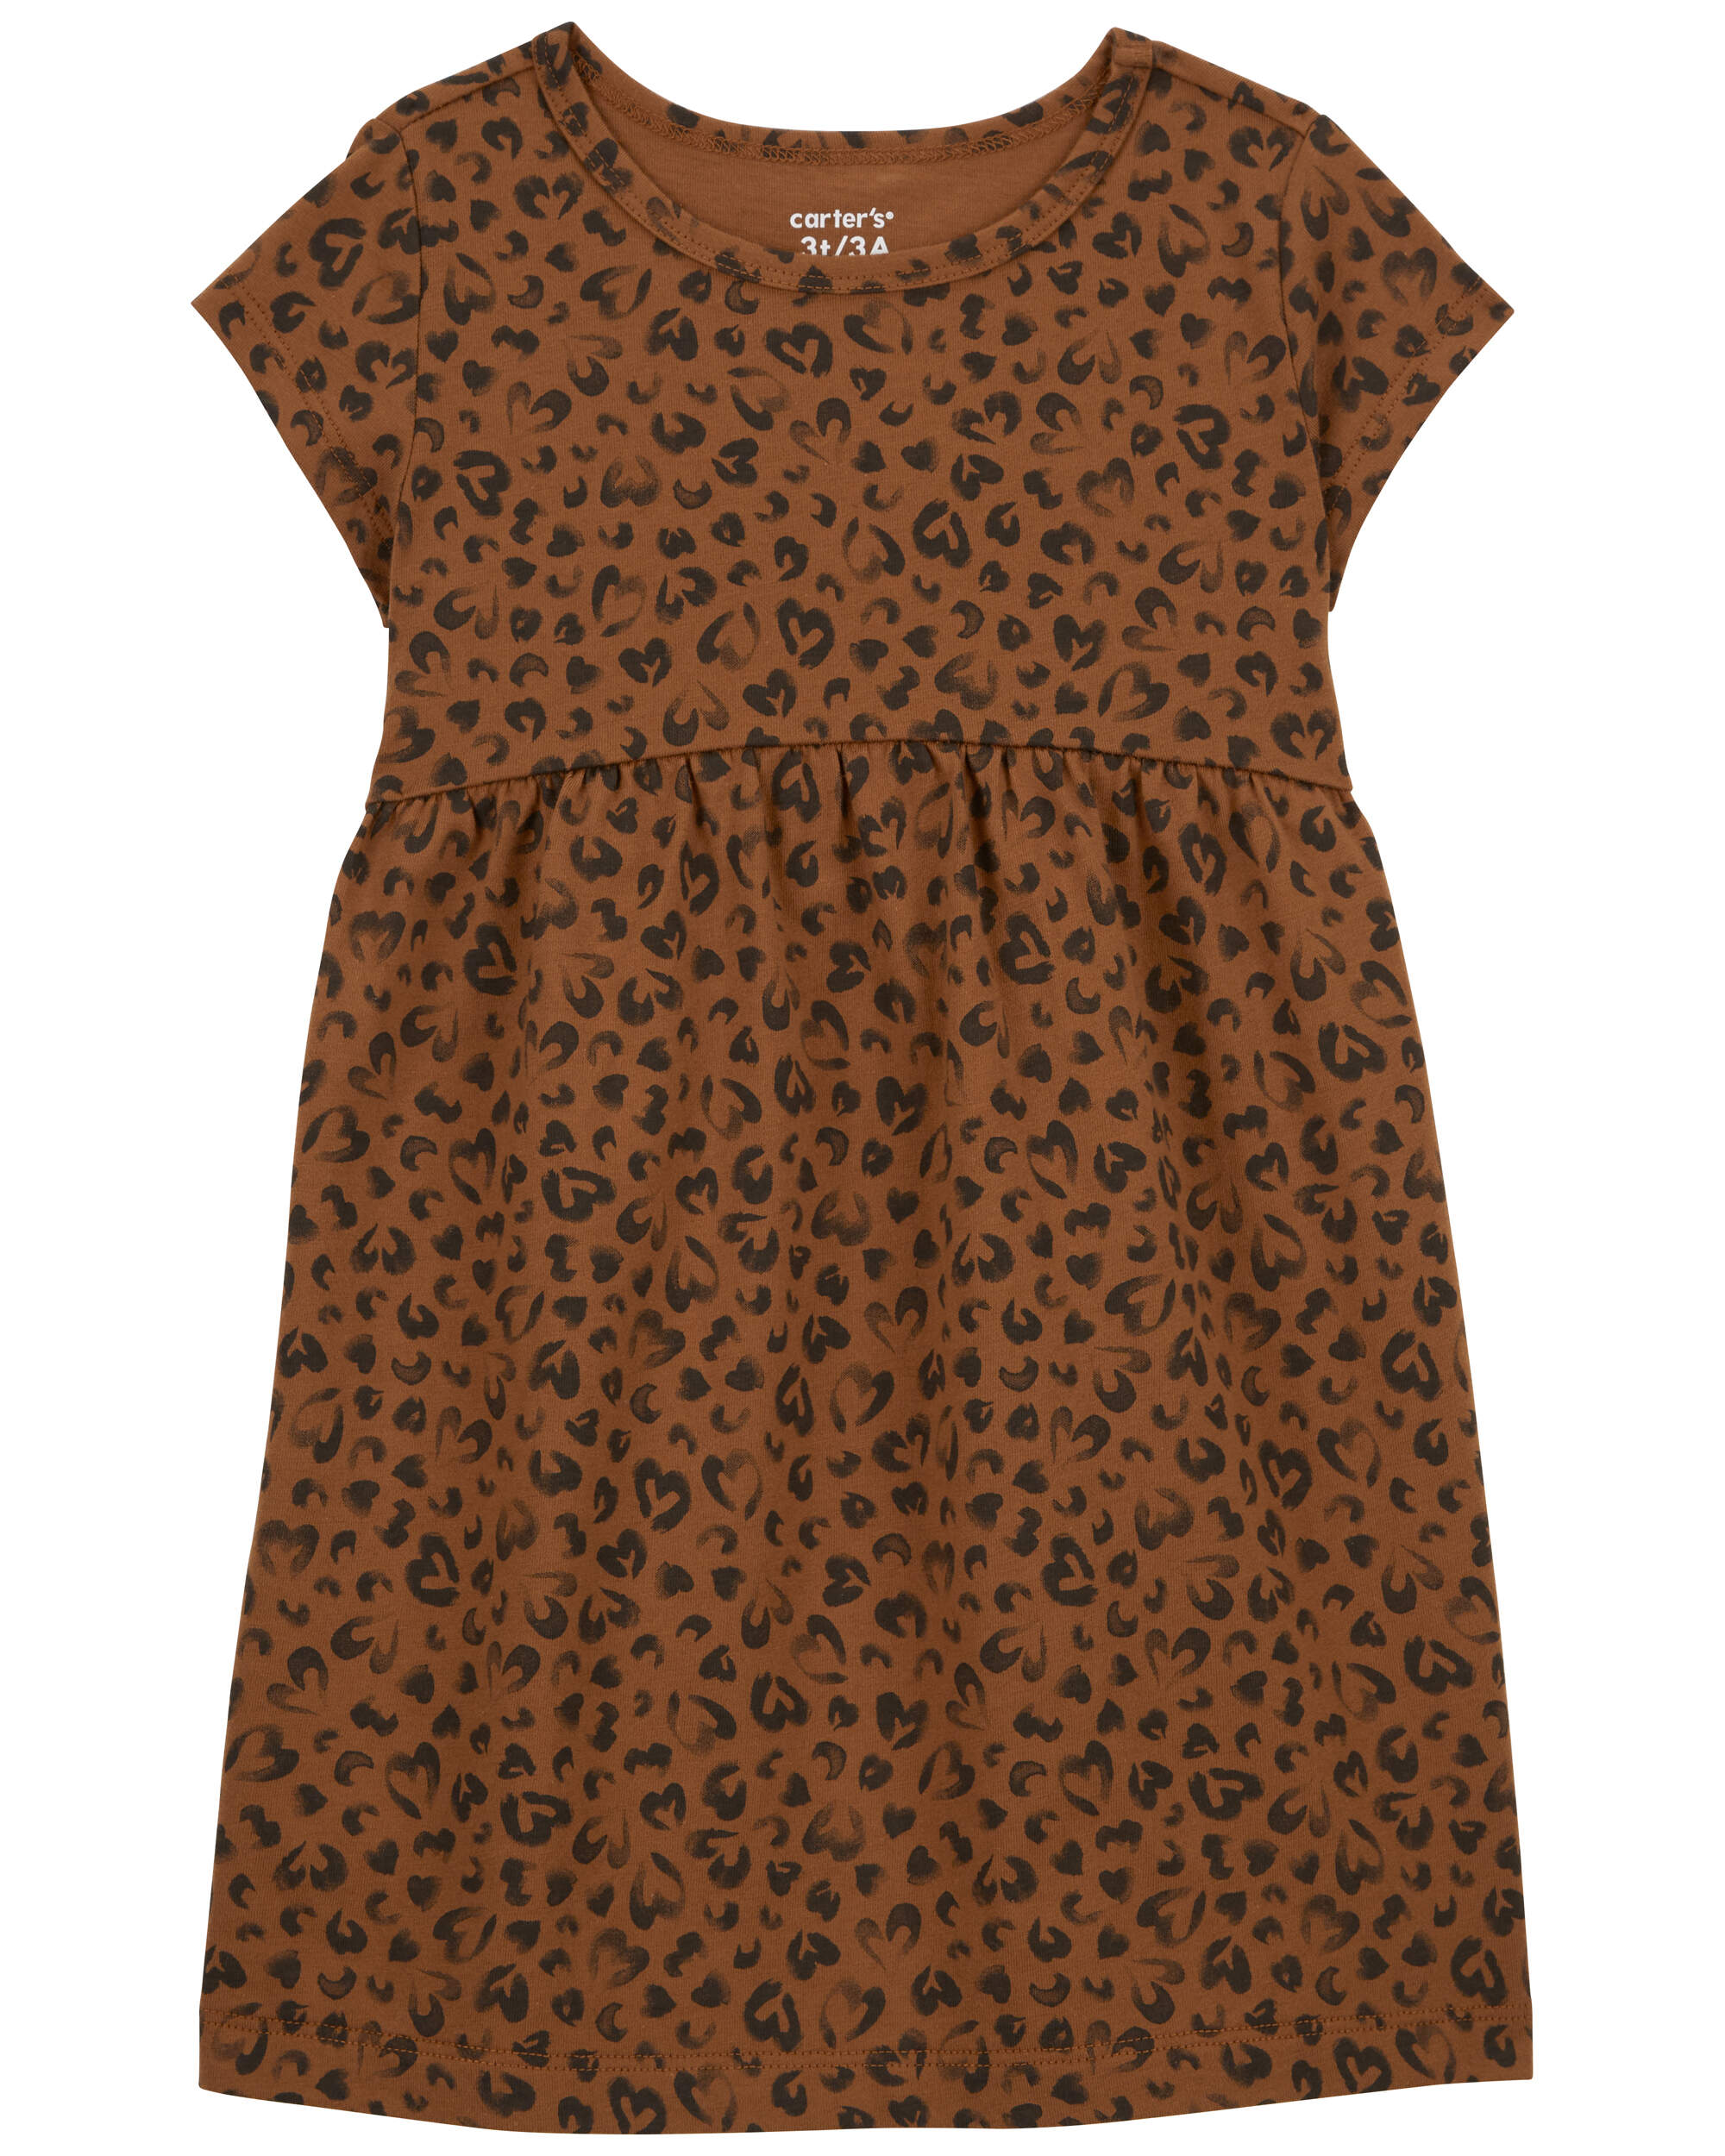 Toddler Leopard Jersey Dress